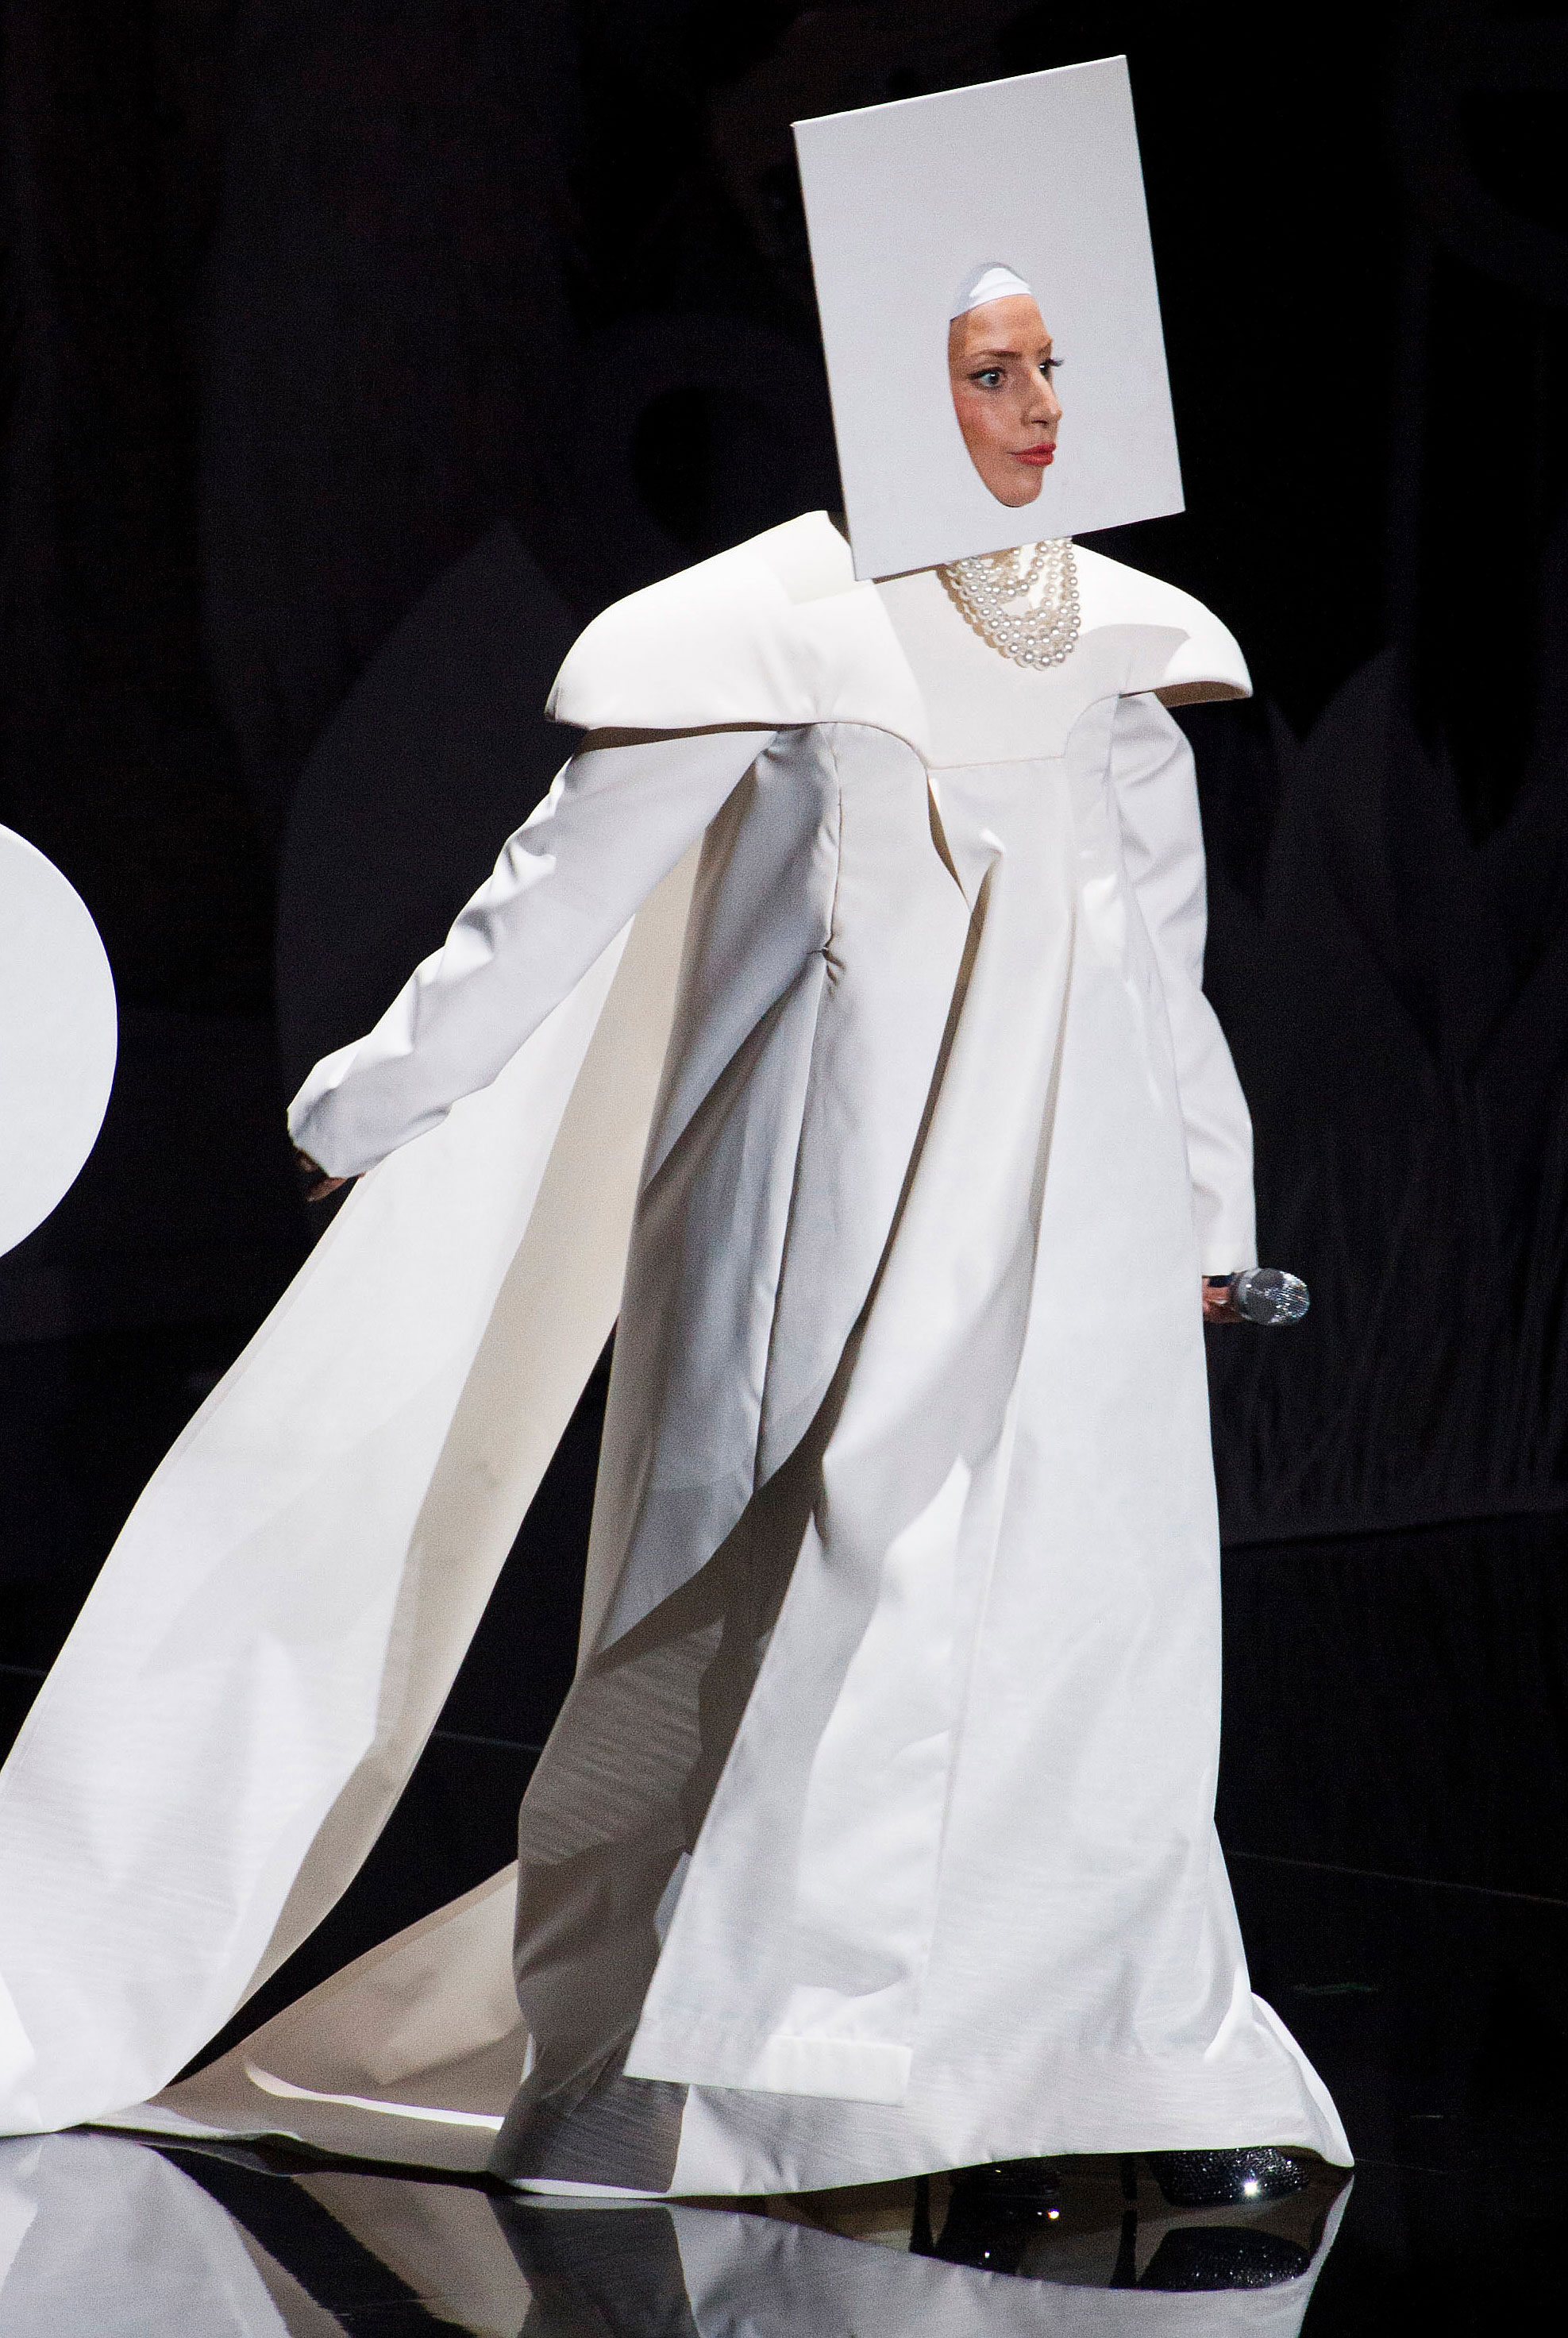 Oscars 2015: Lady Gaga's Dress Took 1,600 Hours to Make